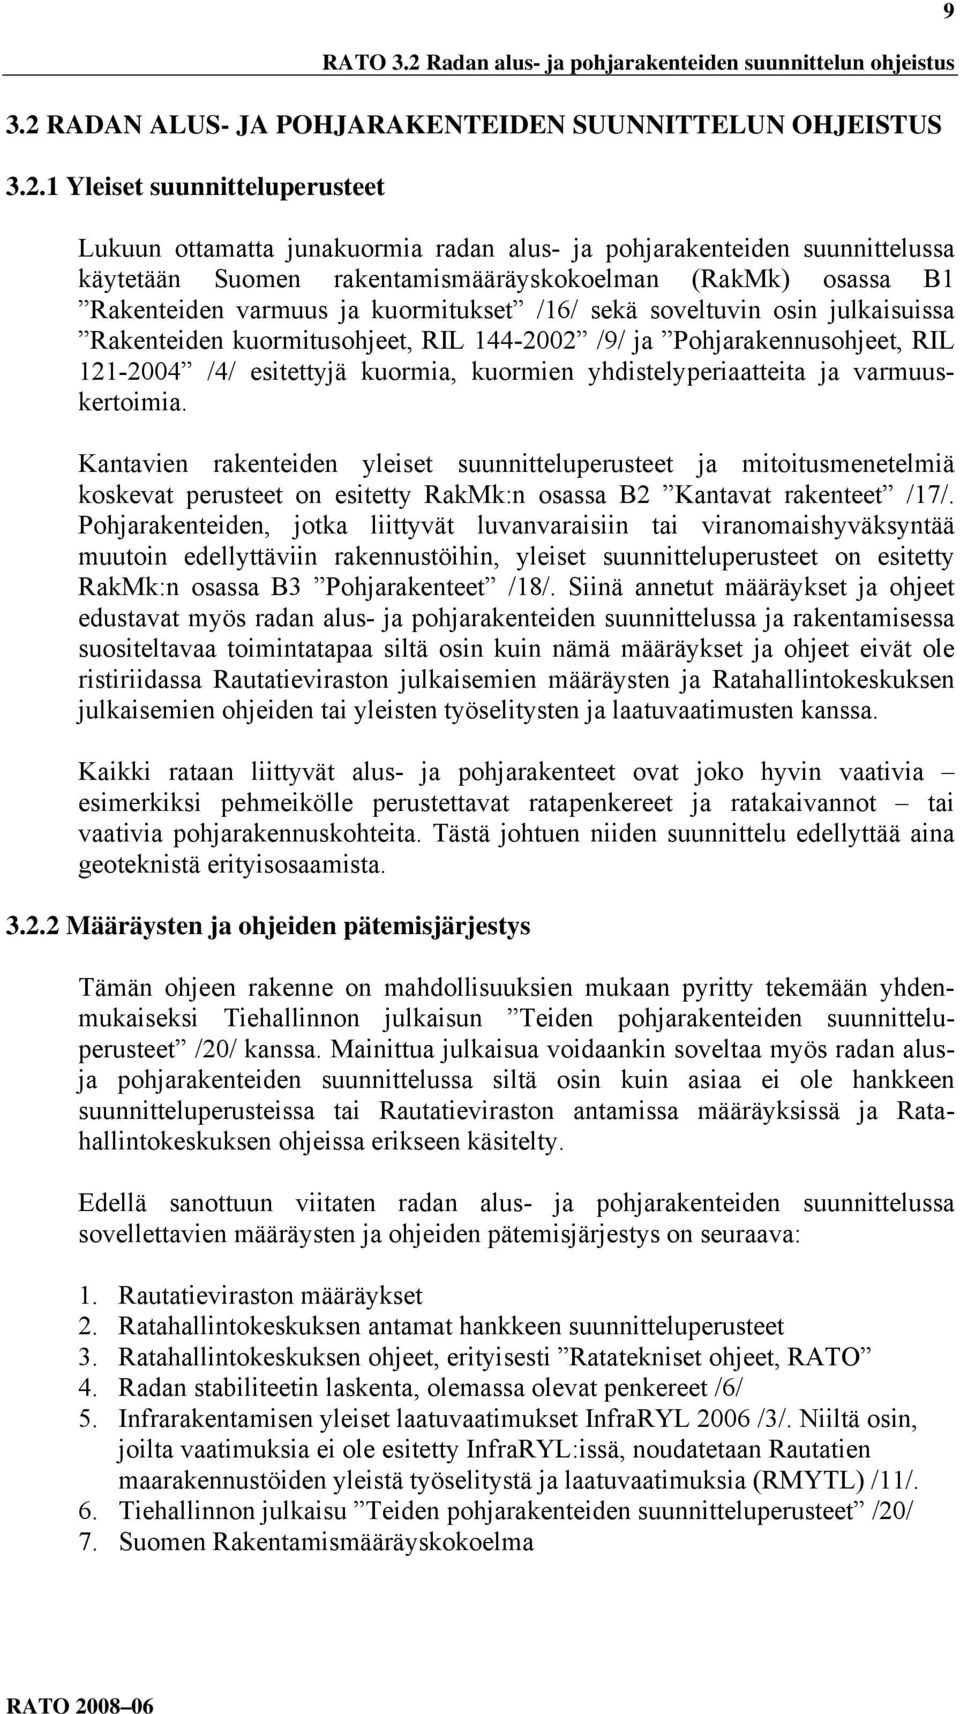 RADAN ALUS- JA POHJARAKENTEIDEN SUUNNITTELUN OHJEISTUS 3.2.